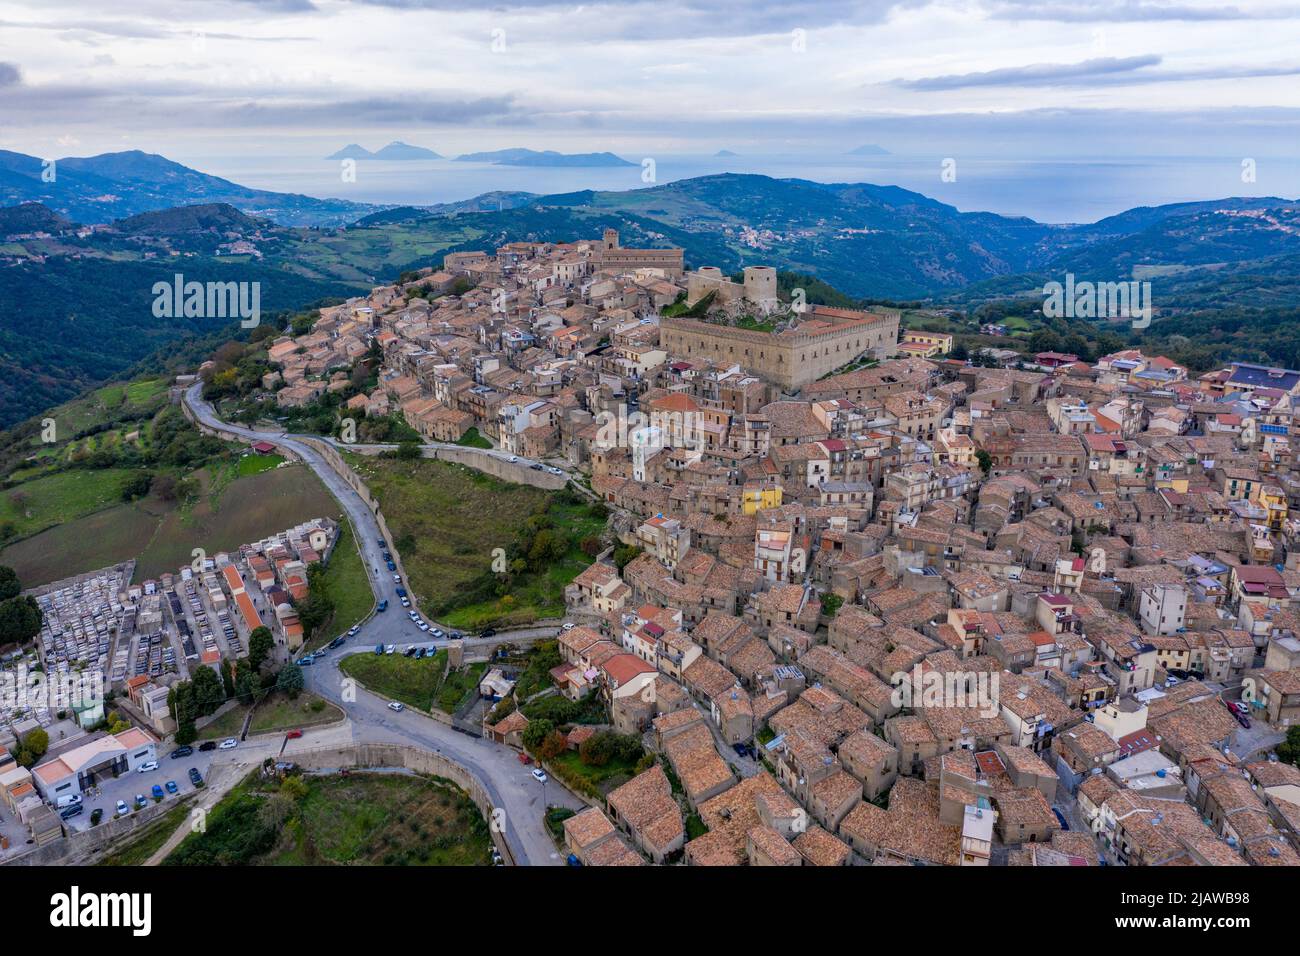 Vista aérea de la ciudad Montalbano Elicona, Italia, Sicilia, provincia de Messina. Vista aérea de la ciudad medieval de Montalbano Elicona con el castillo o. Foto de stock